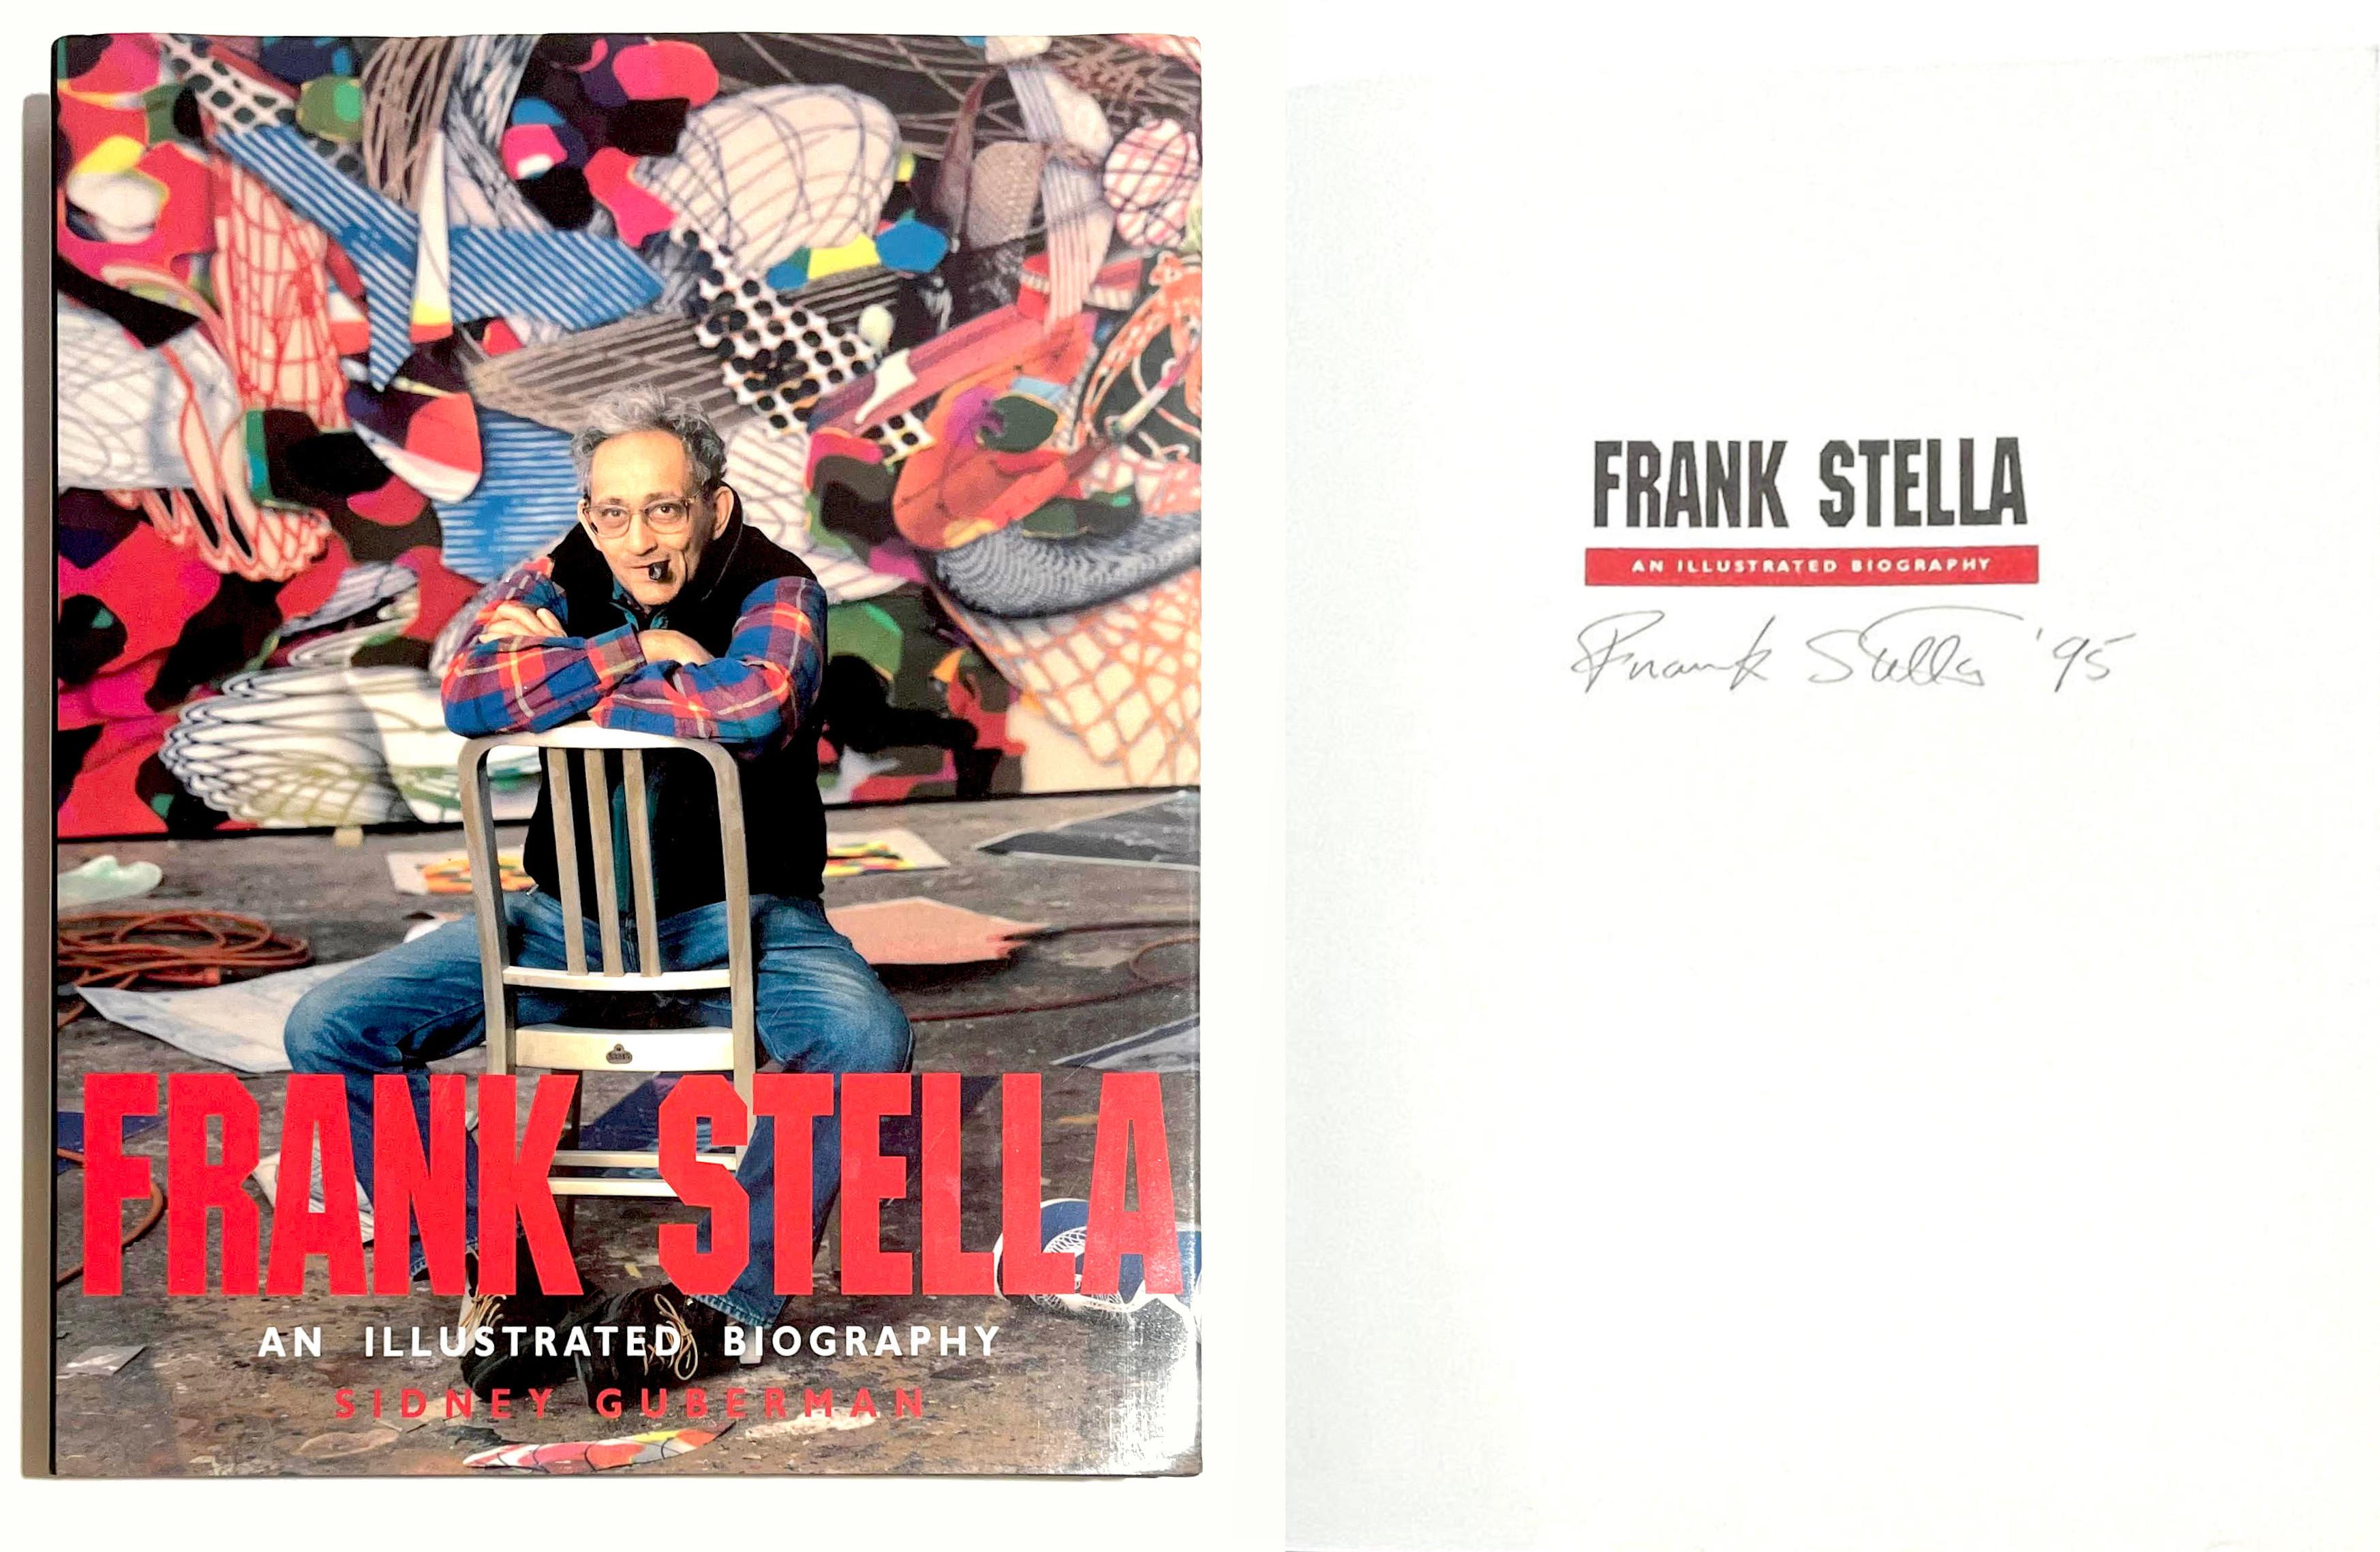 Frank Stella; Eine illustrierte Biografie (Hand signiert und datiert von Frank Stella)